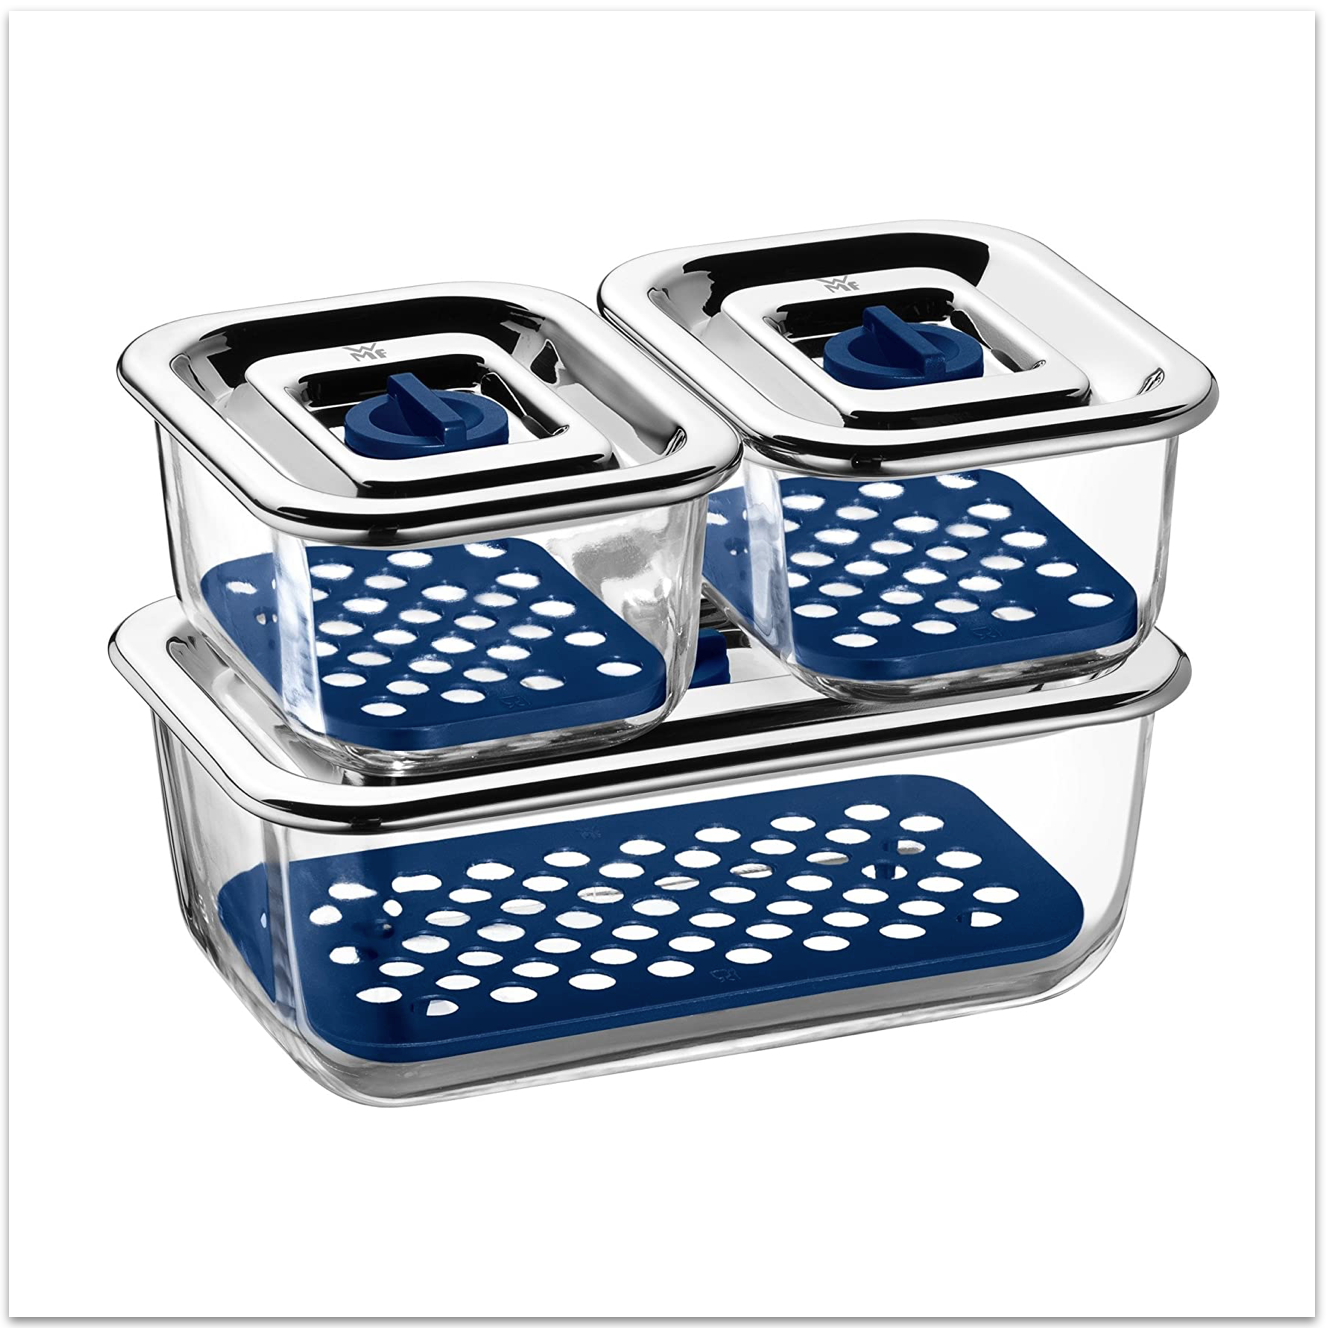 Pack 3 recipientes de almacenamiento rectangulares cristal – cocuisine